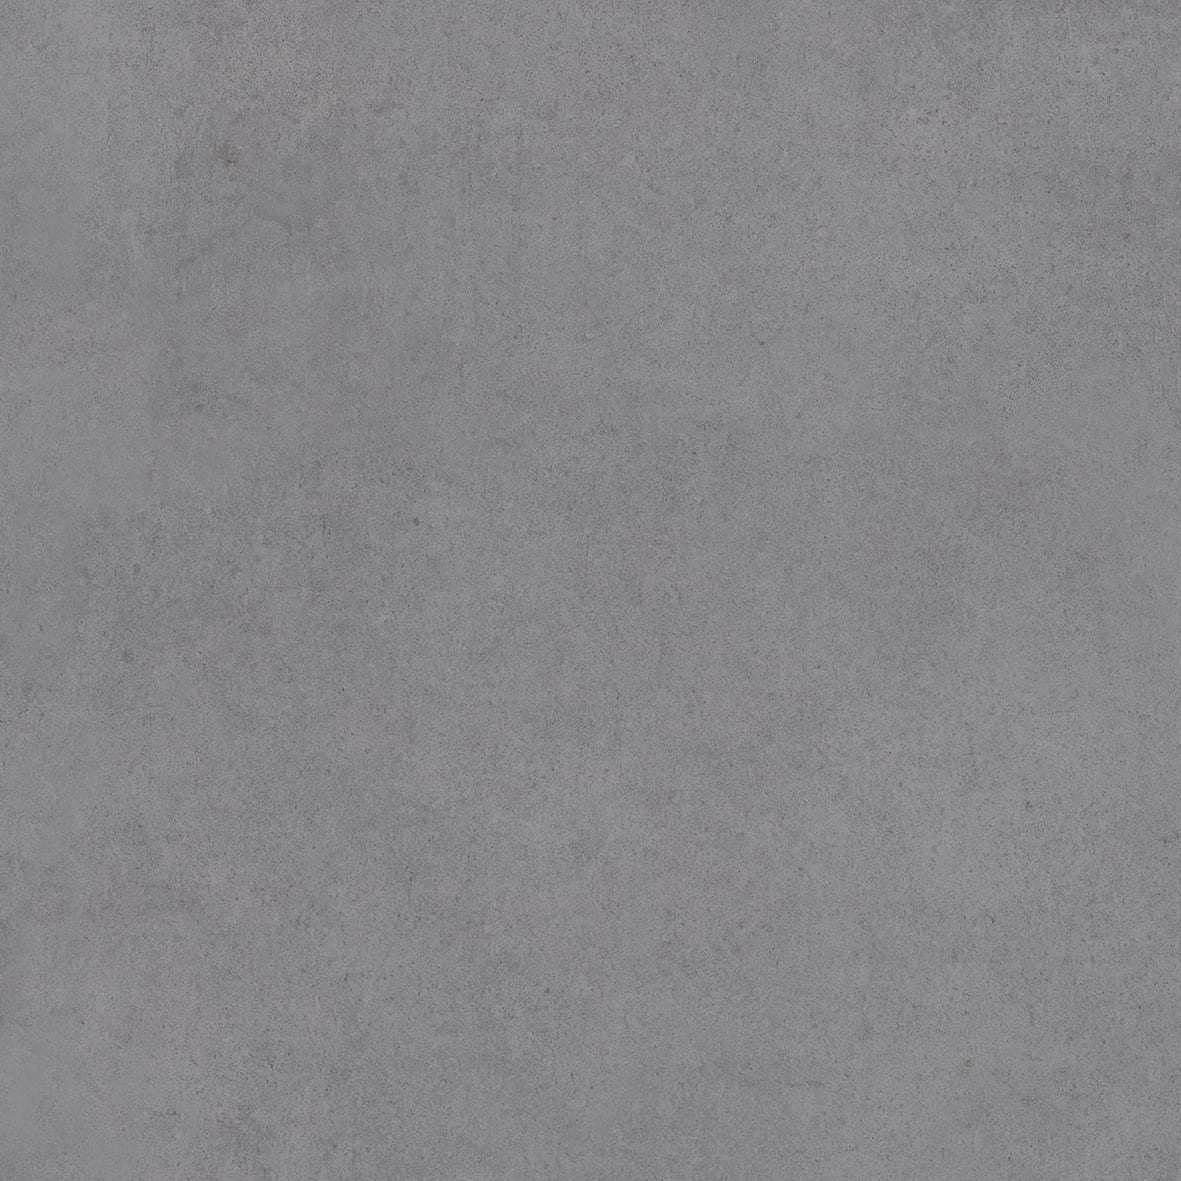 Gresie portelanata, 59 × 59 cm, gri inchis, Tempo, Cesarom